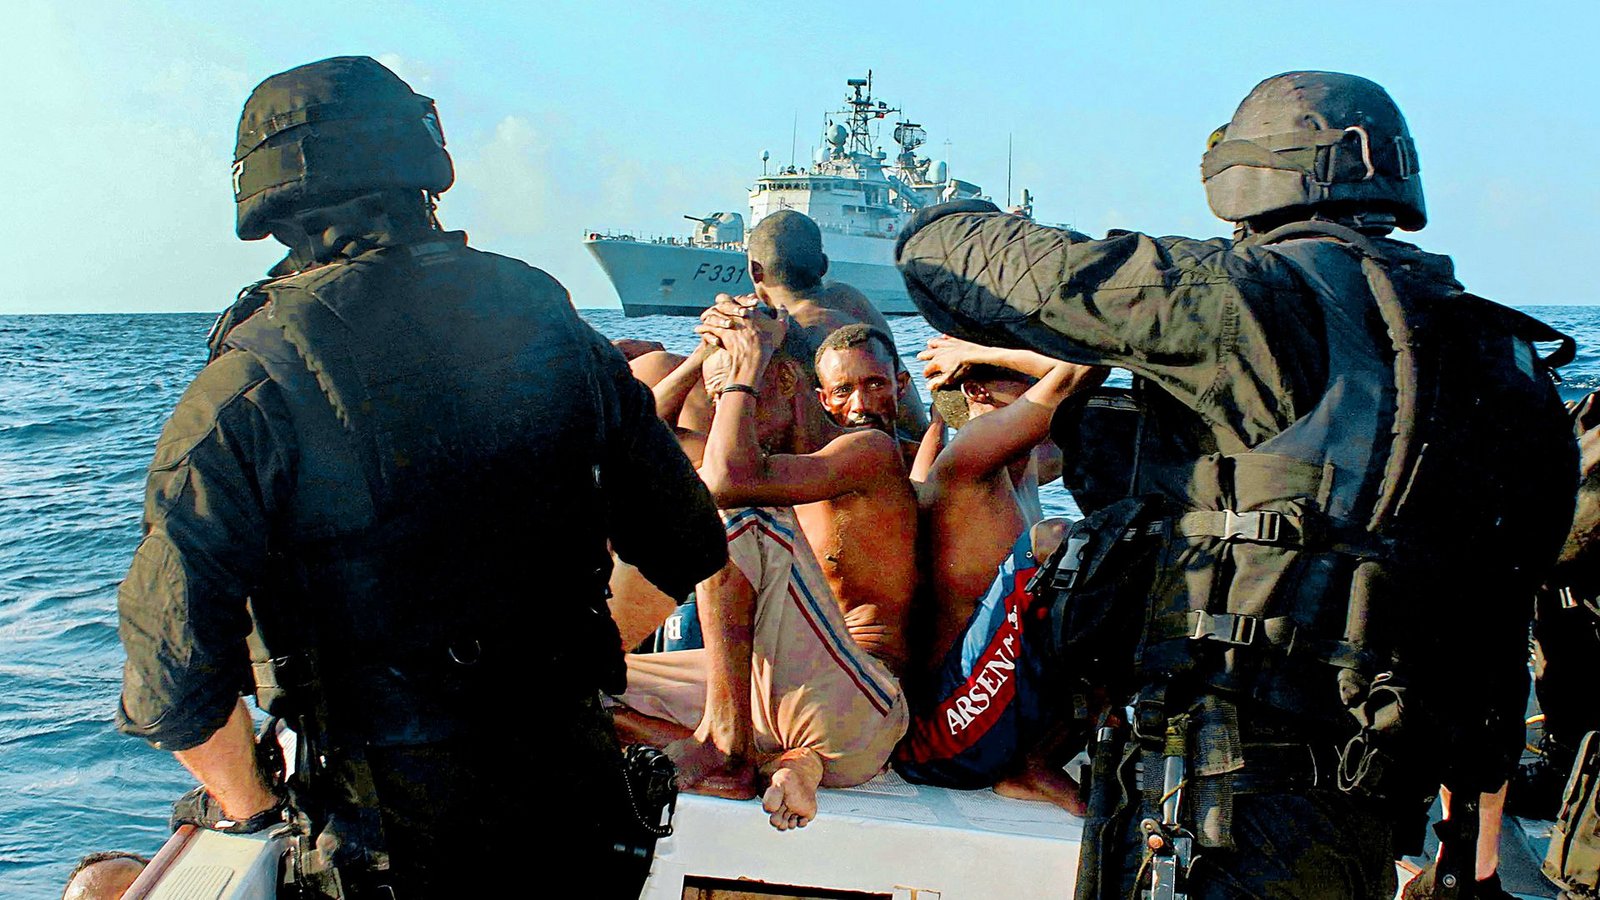 Die EU-Mission „Atalanta“ bekämpfte schon 2009 somalische Piraten (Archivbild). Jetzt sind wieder Freibeuter am Golf von Aden aktiv.Foto: dpa/Carlos Dias